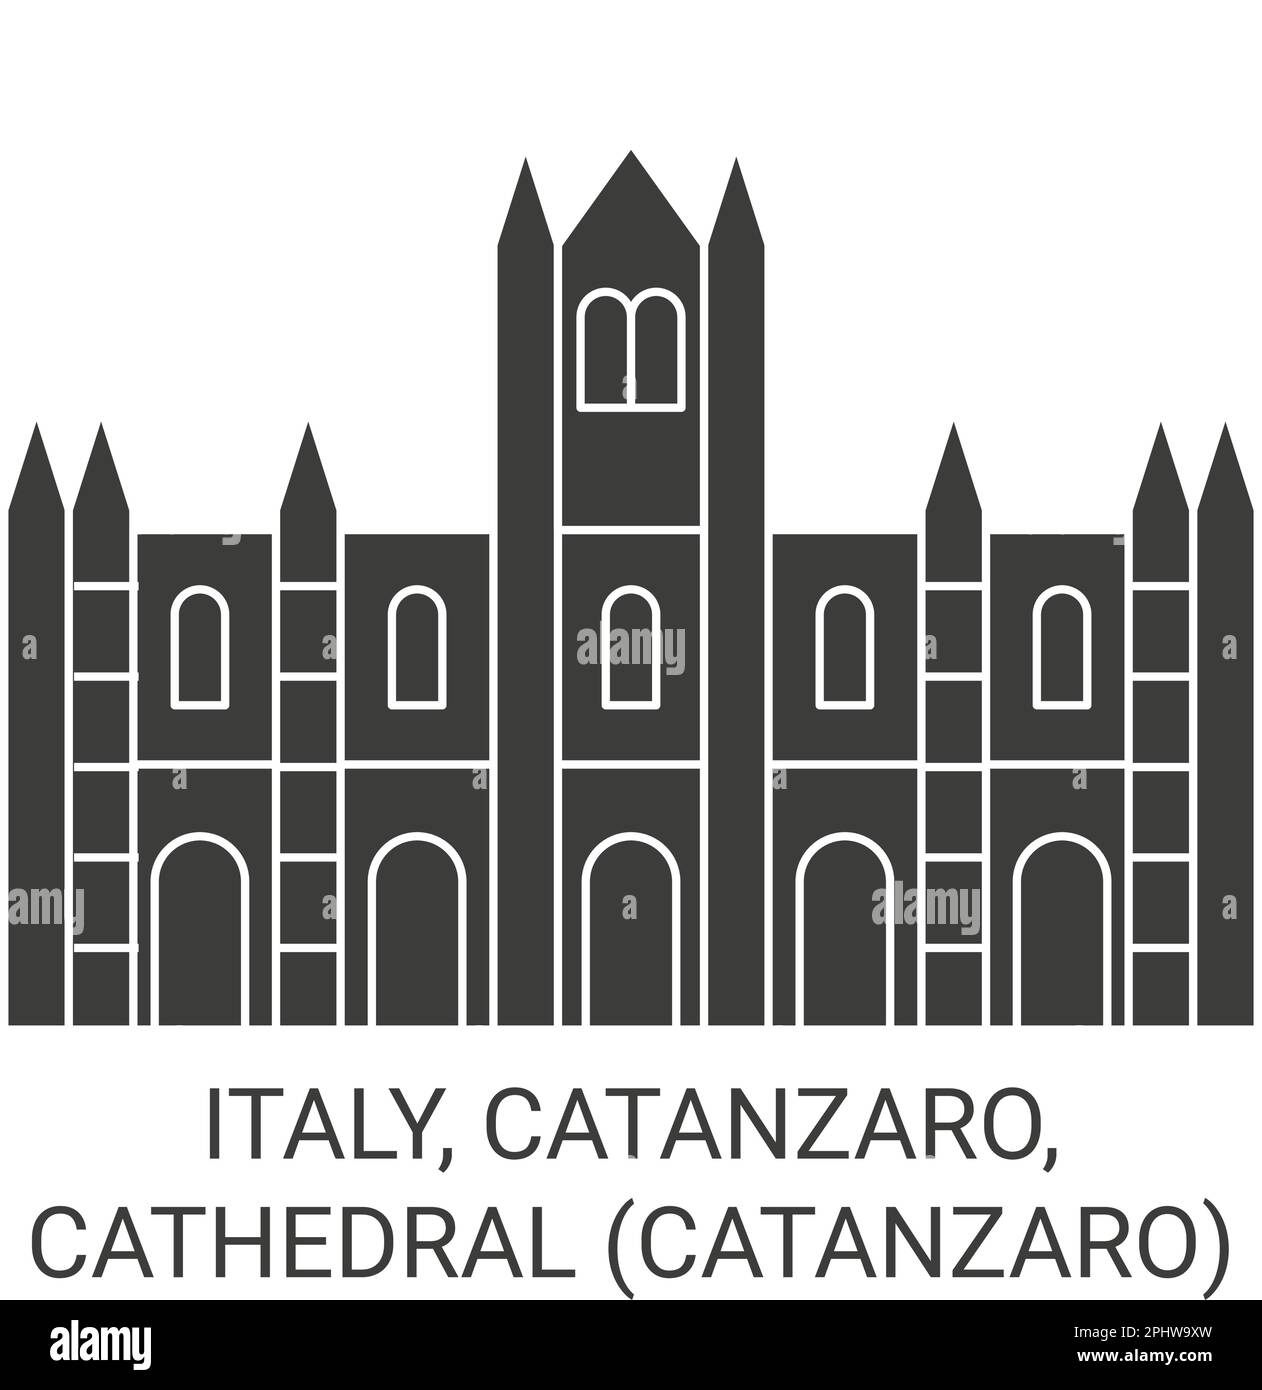 Italien, Catanzaro, Kathedrale Catanzaro Reise Wahrzeichen Vektordarstellung Stock Vektor